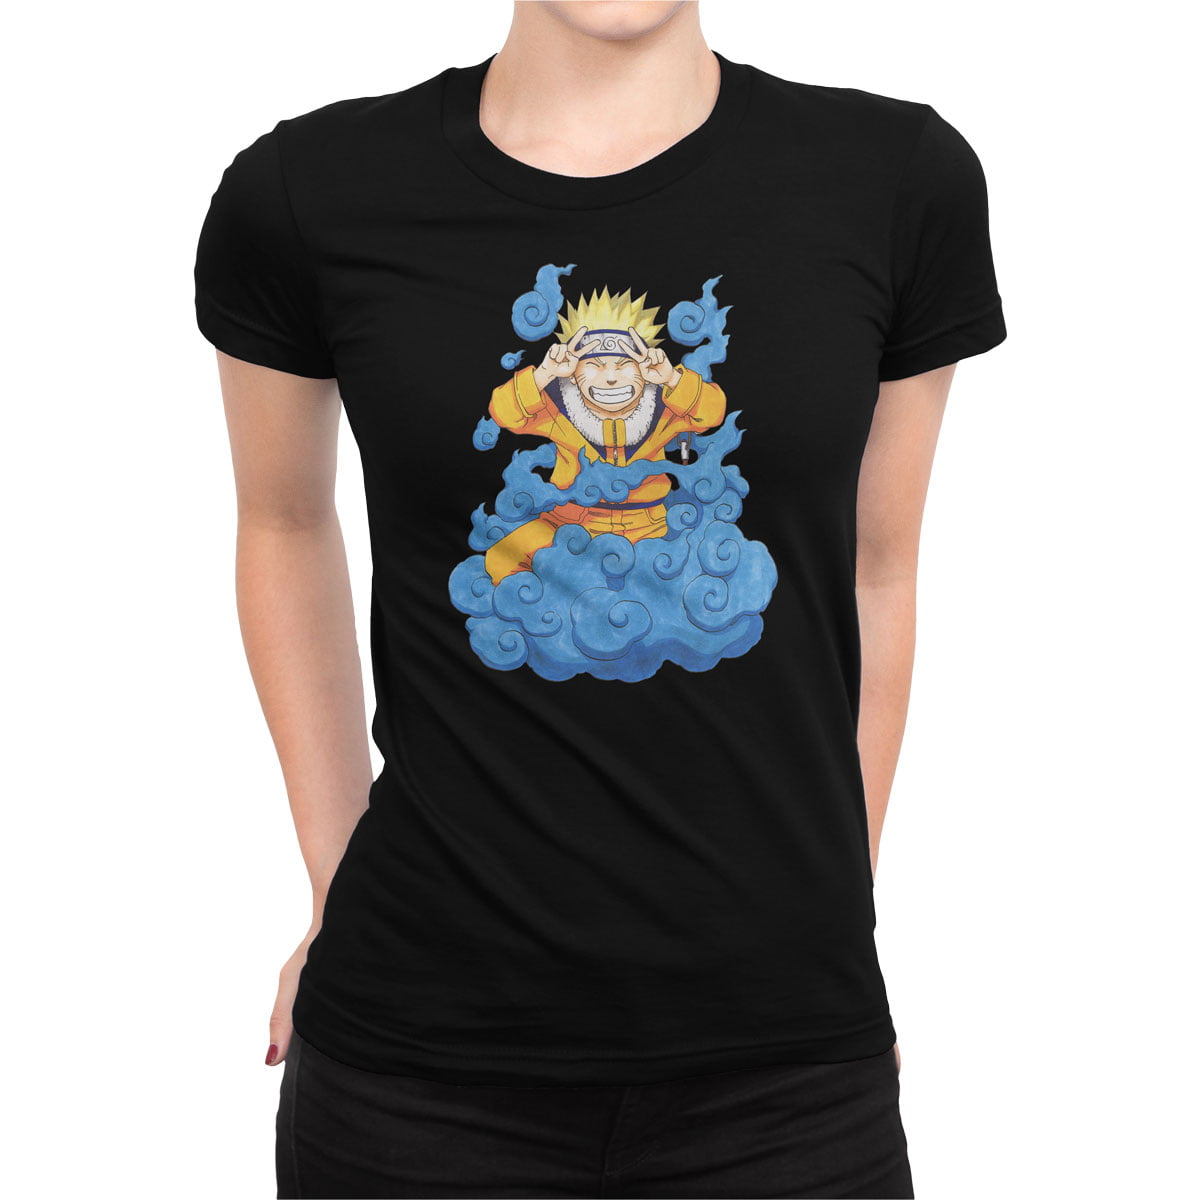 Naruto uzumaki no2 tisort kadin s - naruto uzumaki no2 kadın t-shirt - figurex